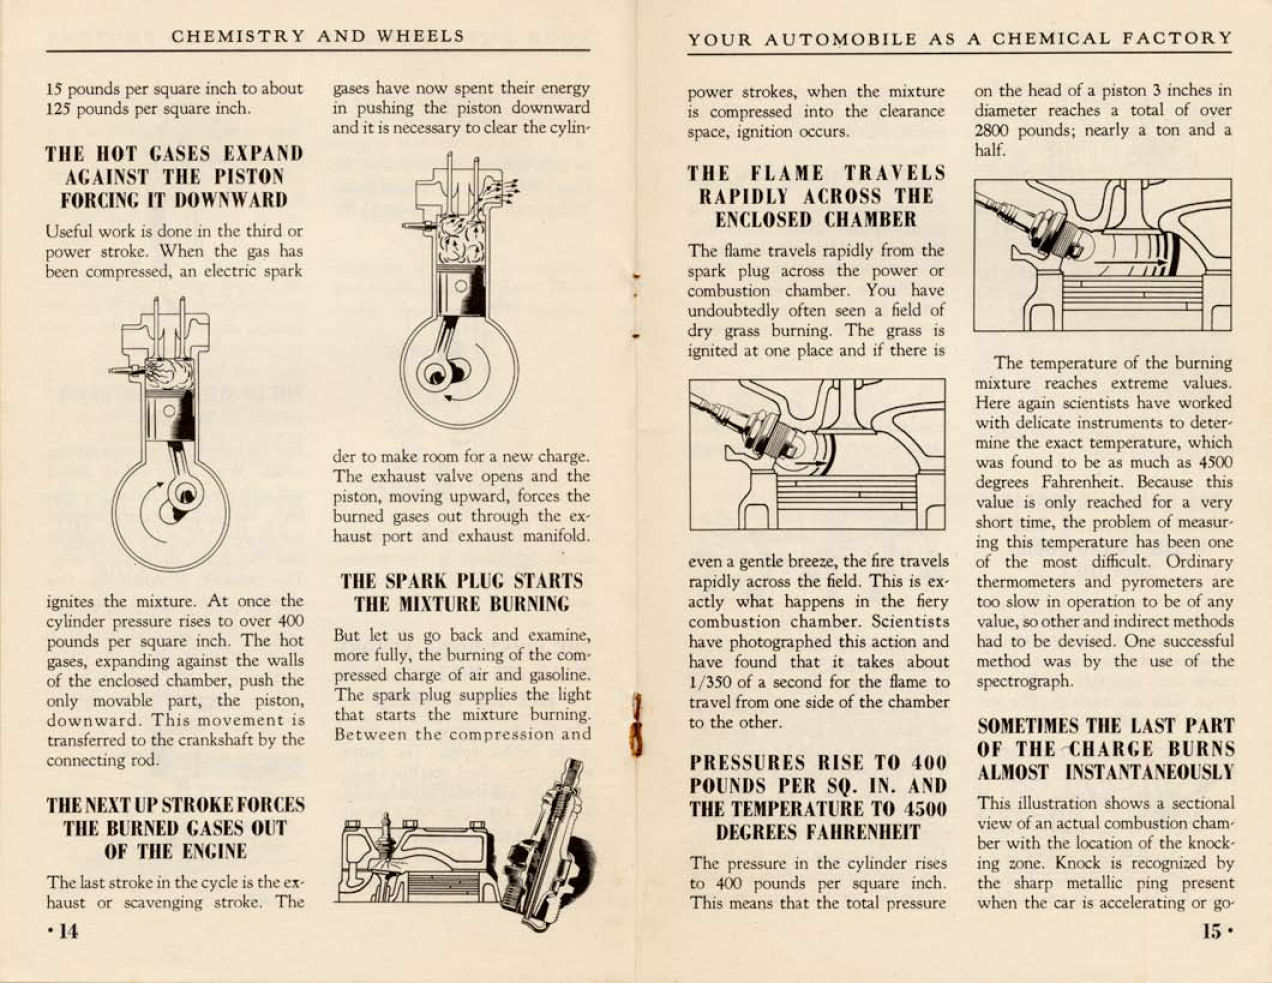 n_1938-Chemistry and Wheels-14-15.jpg